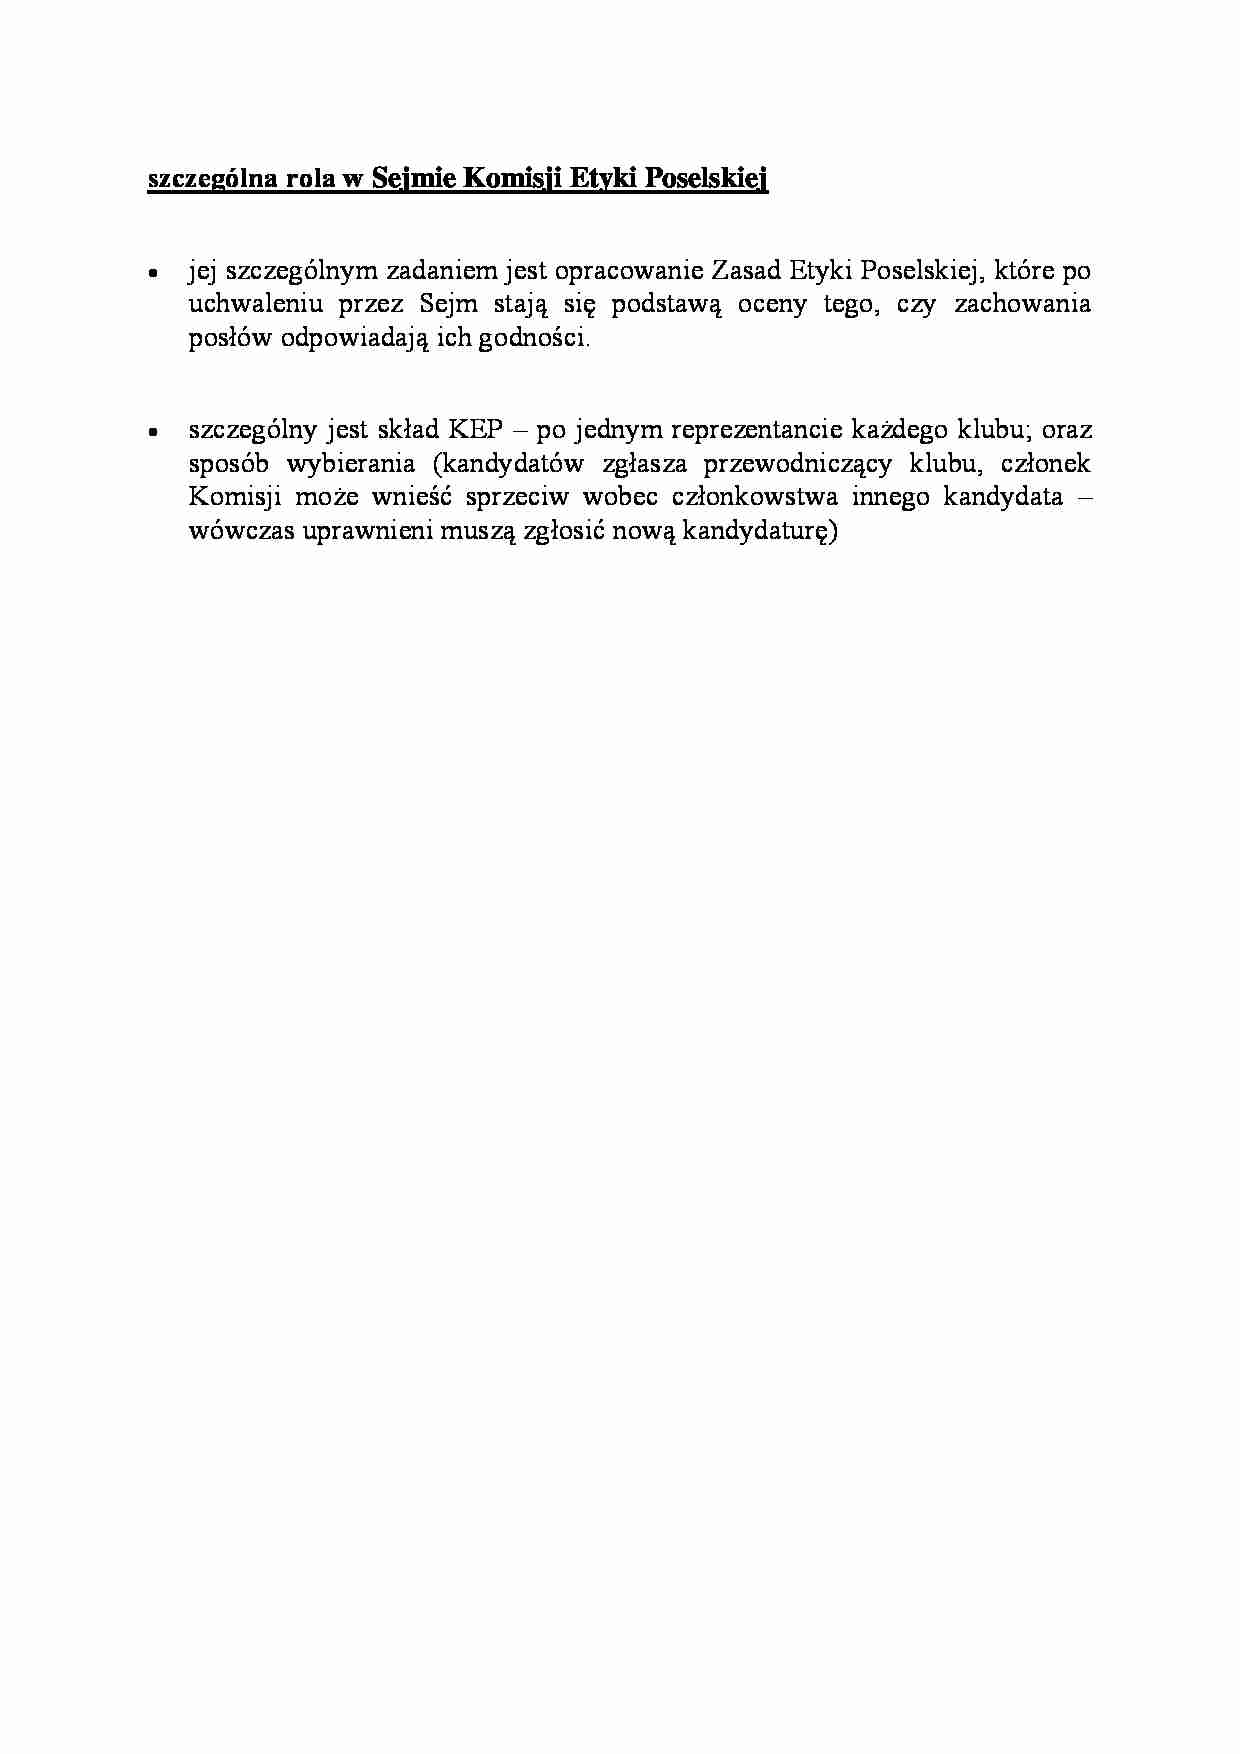 szczególna rola w Sejmie Komisji Etyki Poselskiej - omówienie - strona 1